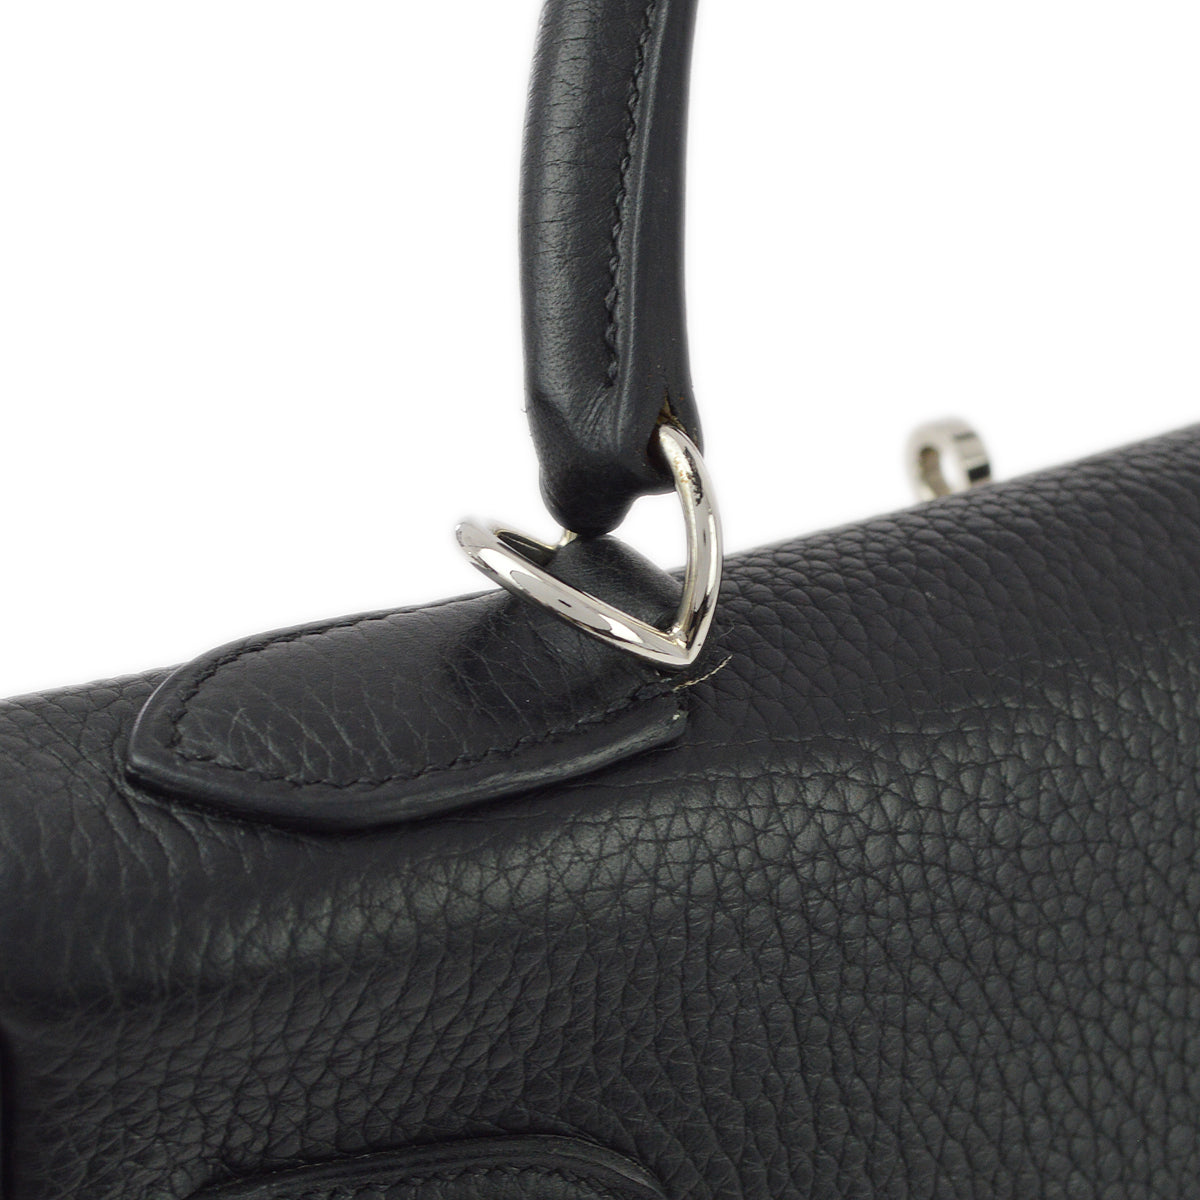 Hermes Black Taurillon Clemence Kelly 32 Retourne 2way Shoulder Handbag